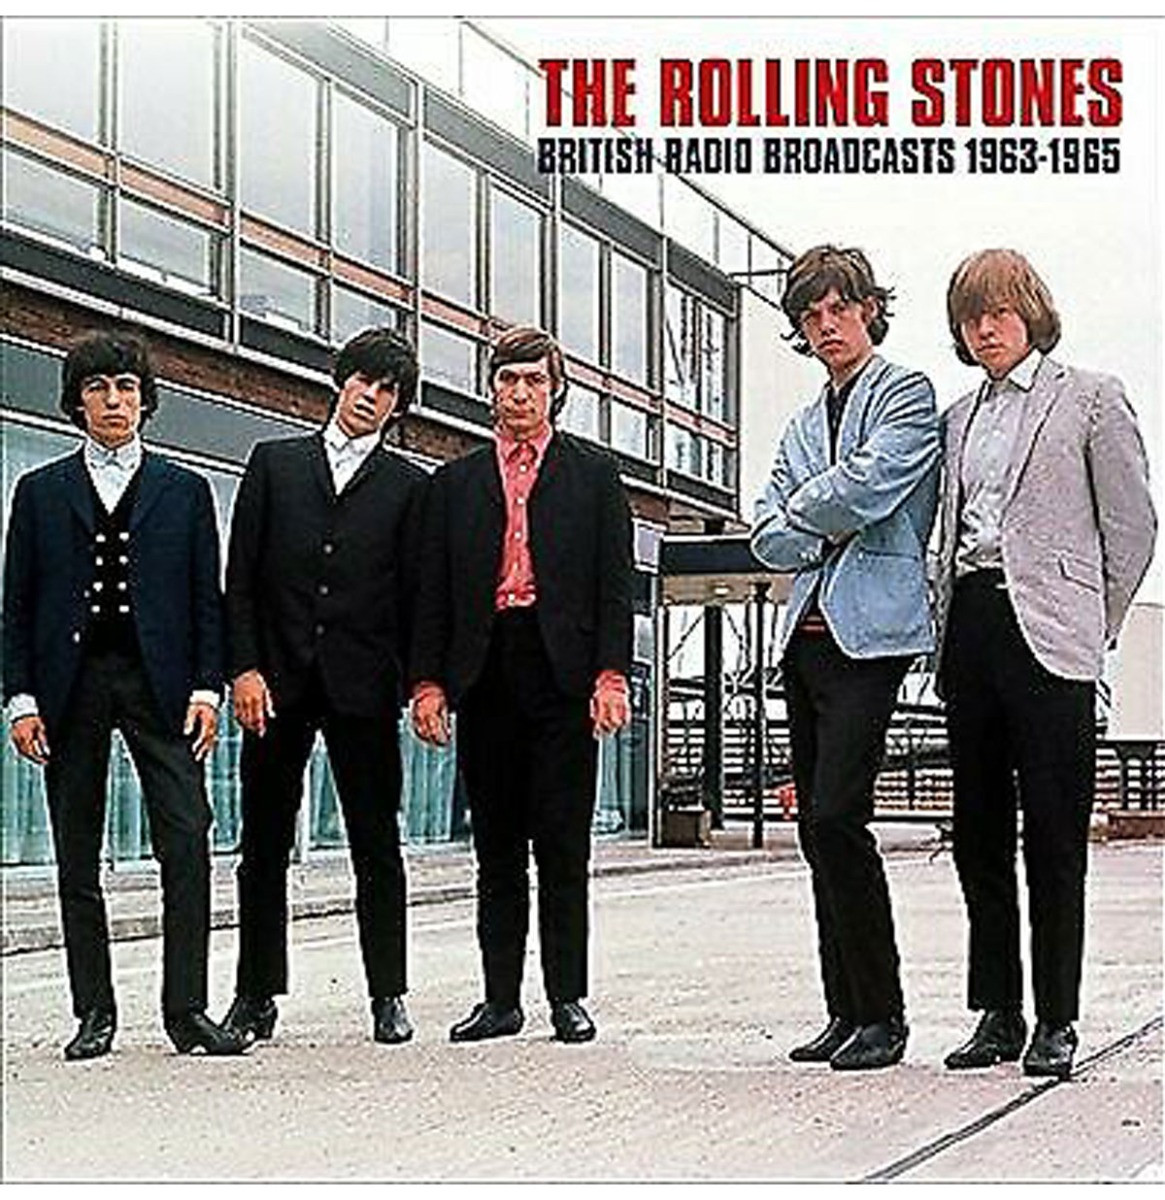 The Rolling Stones - British Radio Broadcast 1963-1965 LP